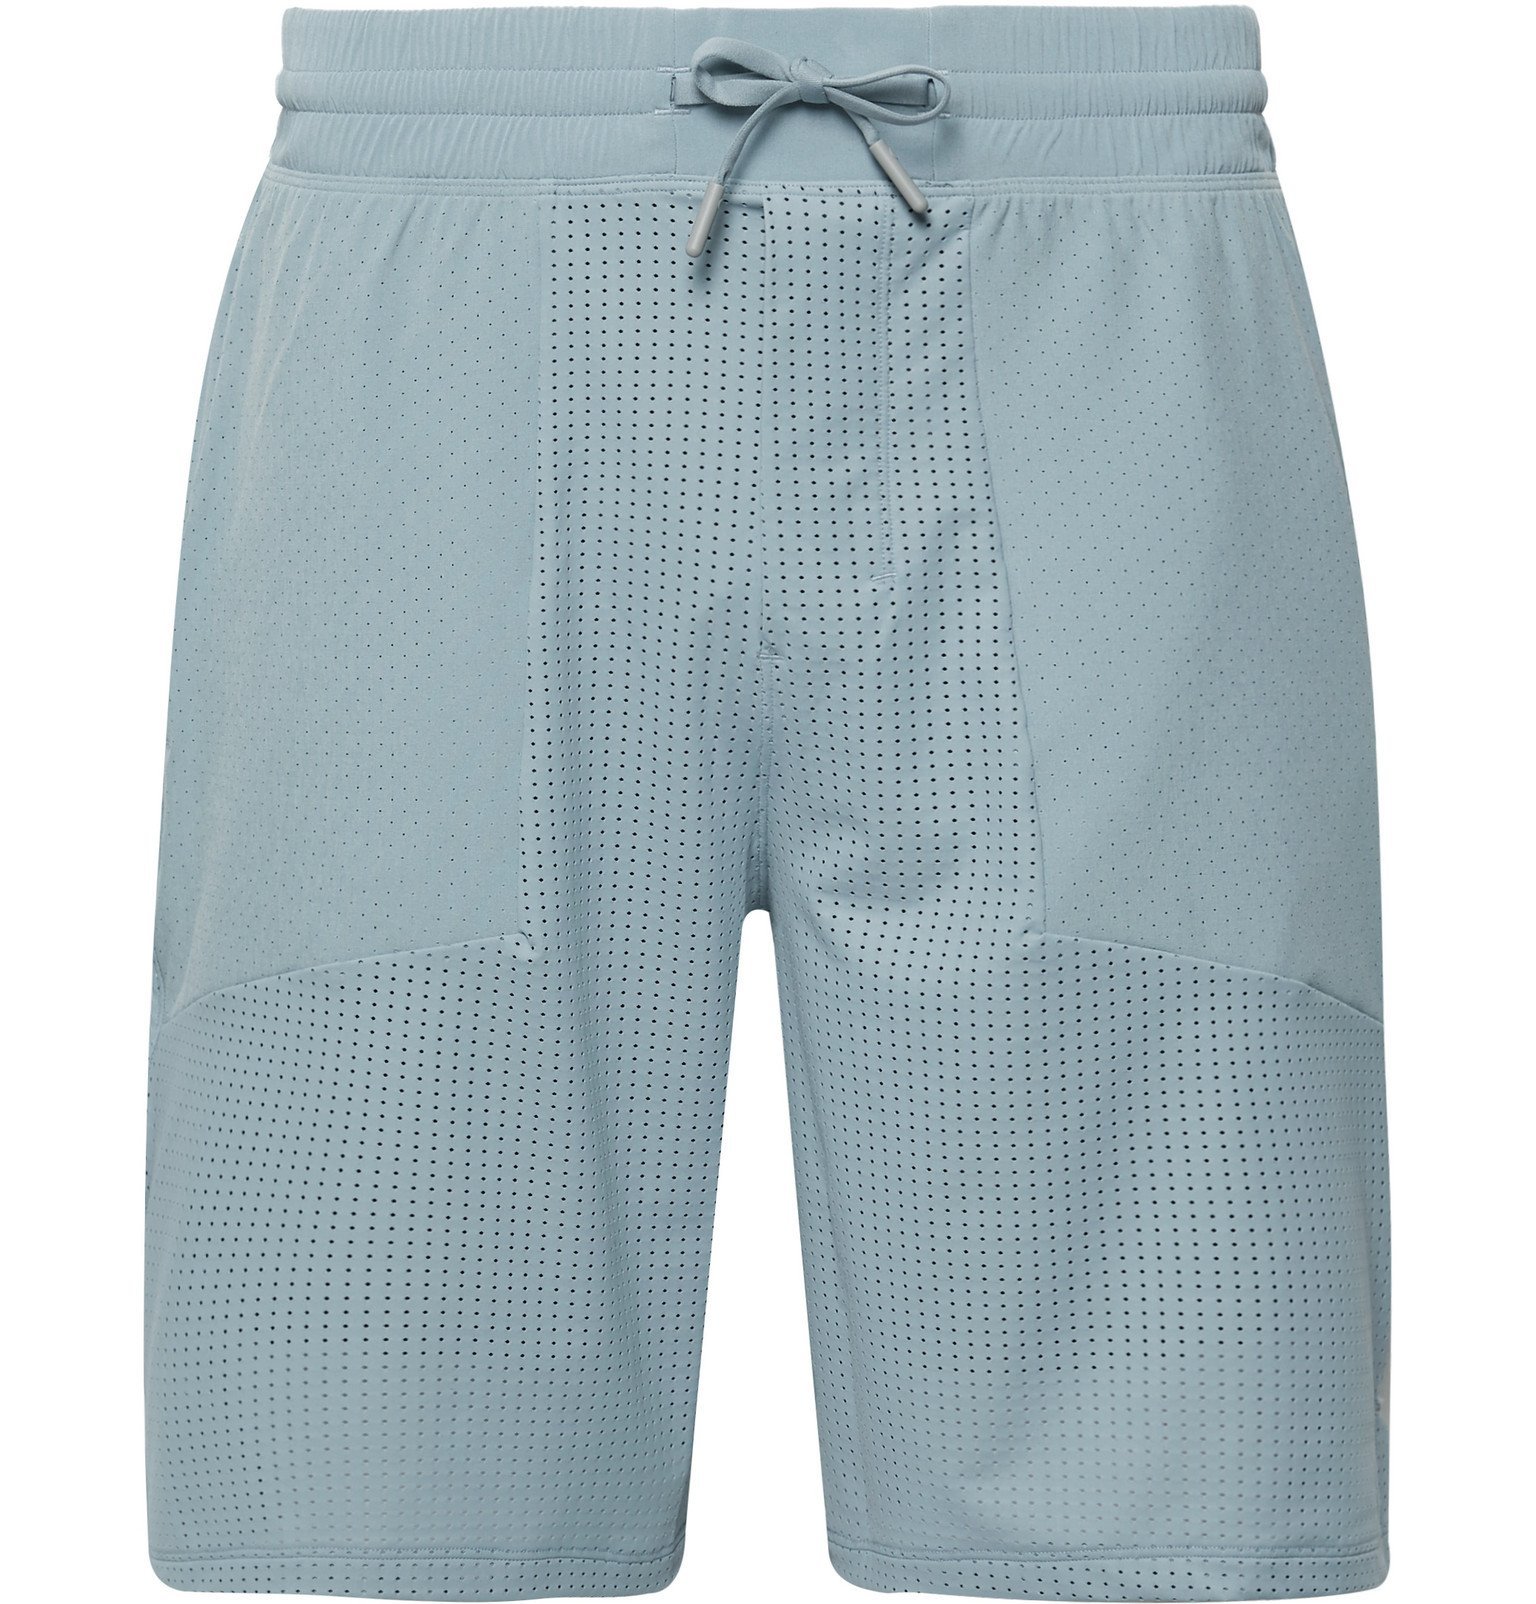 lululemon mesh shorts